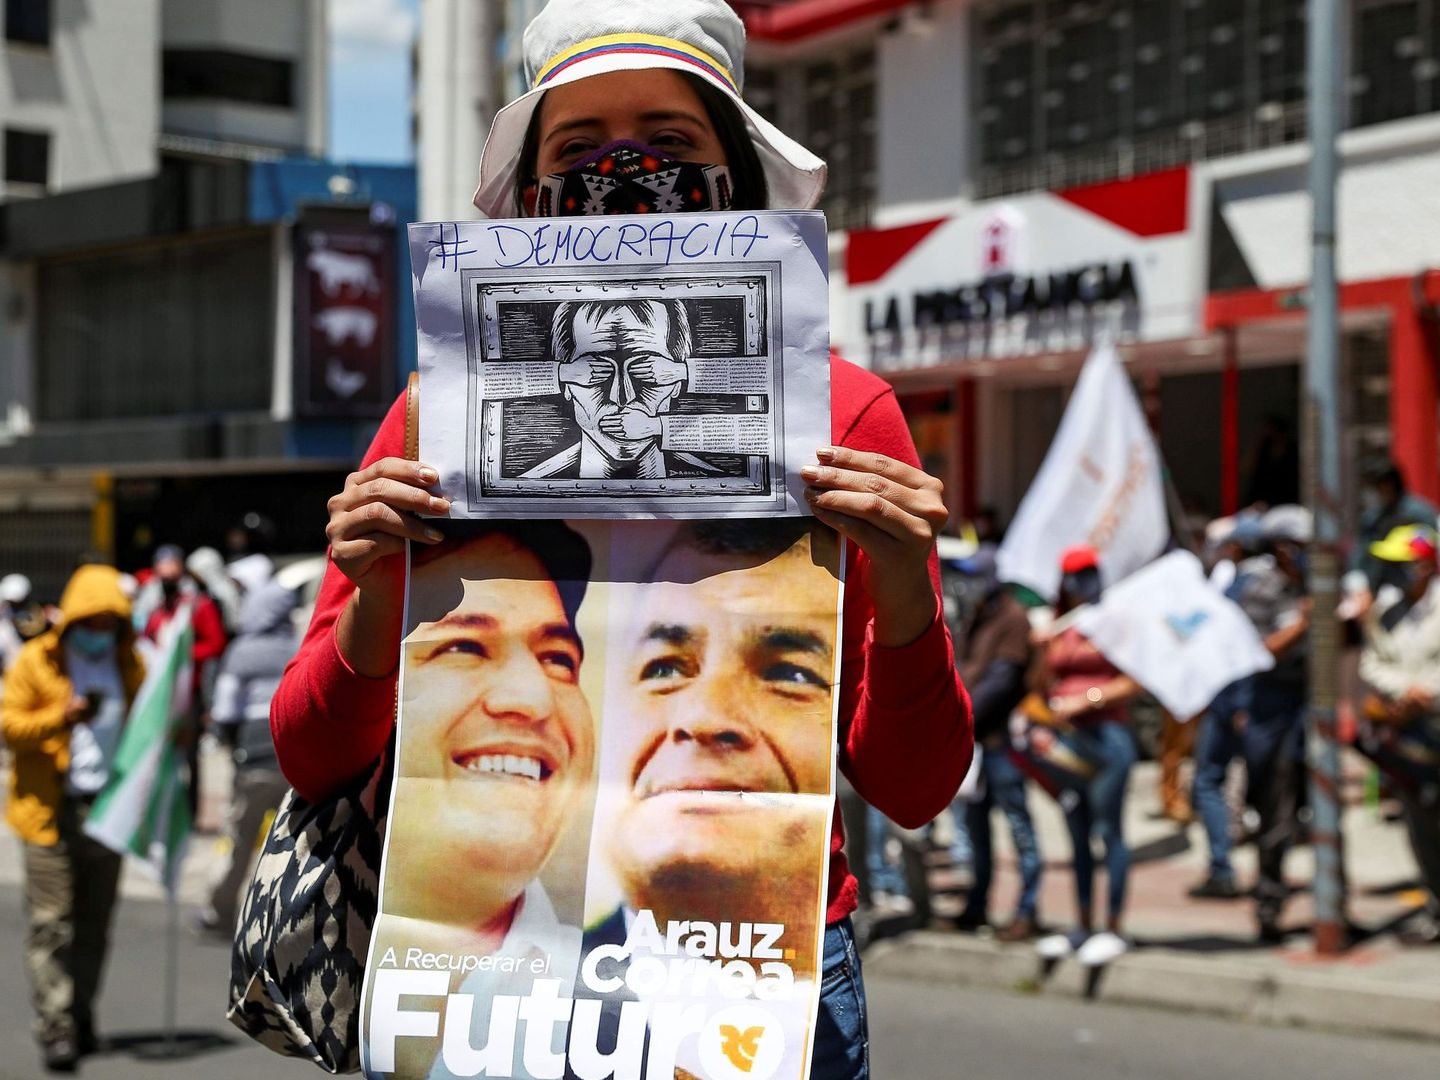 Una ciudadana de Ecuador durante una concentración política en septiembre. (EFE)